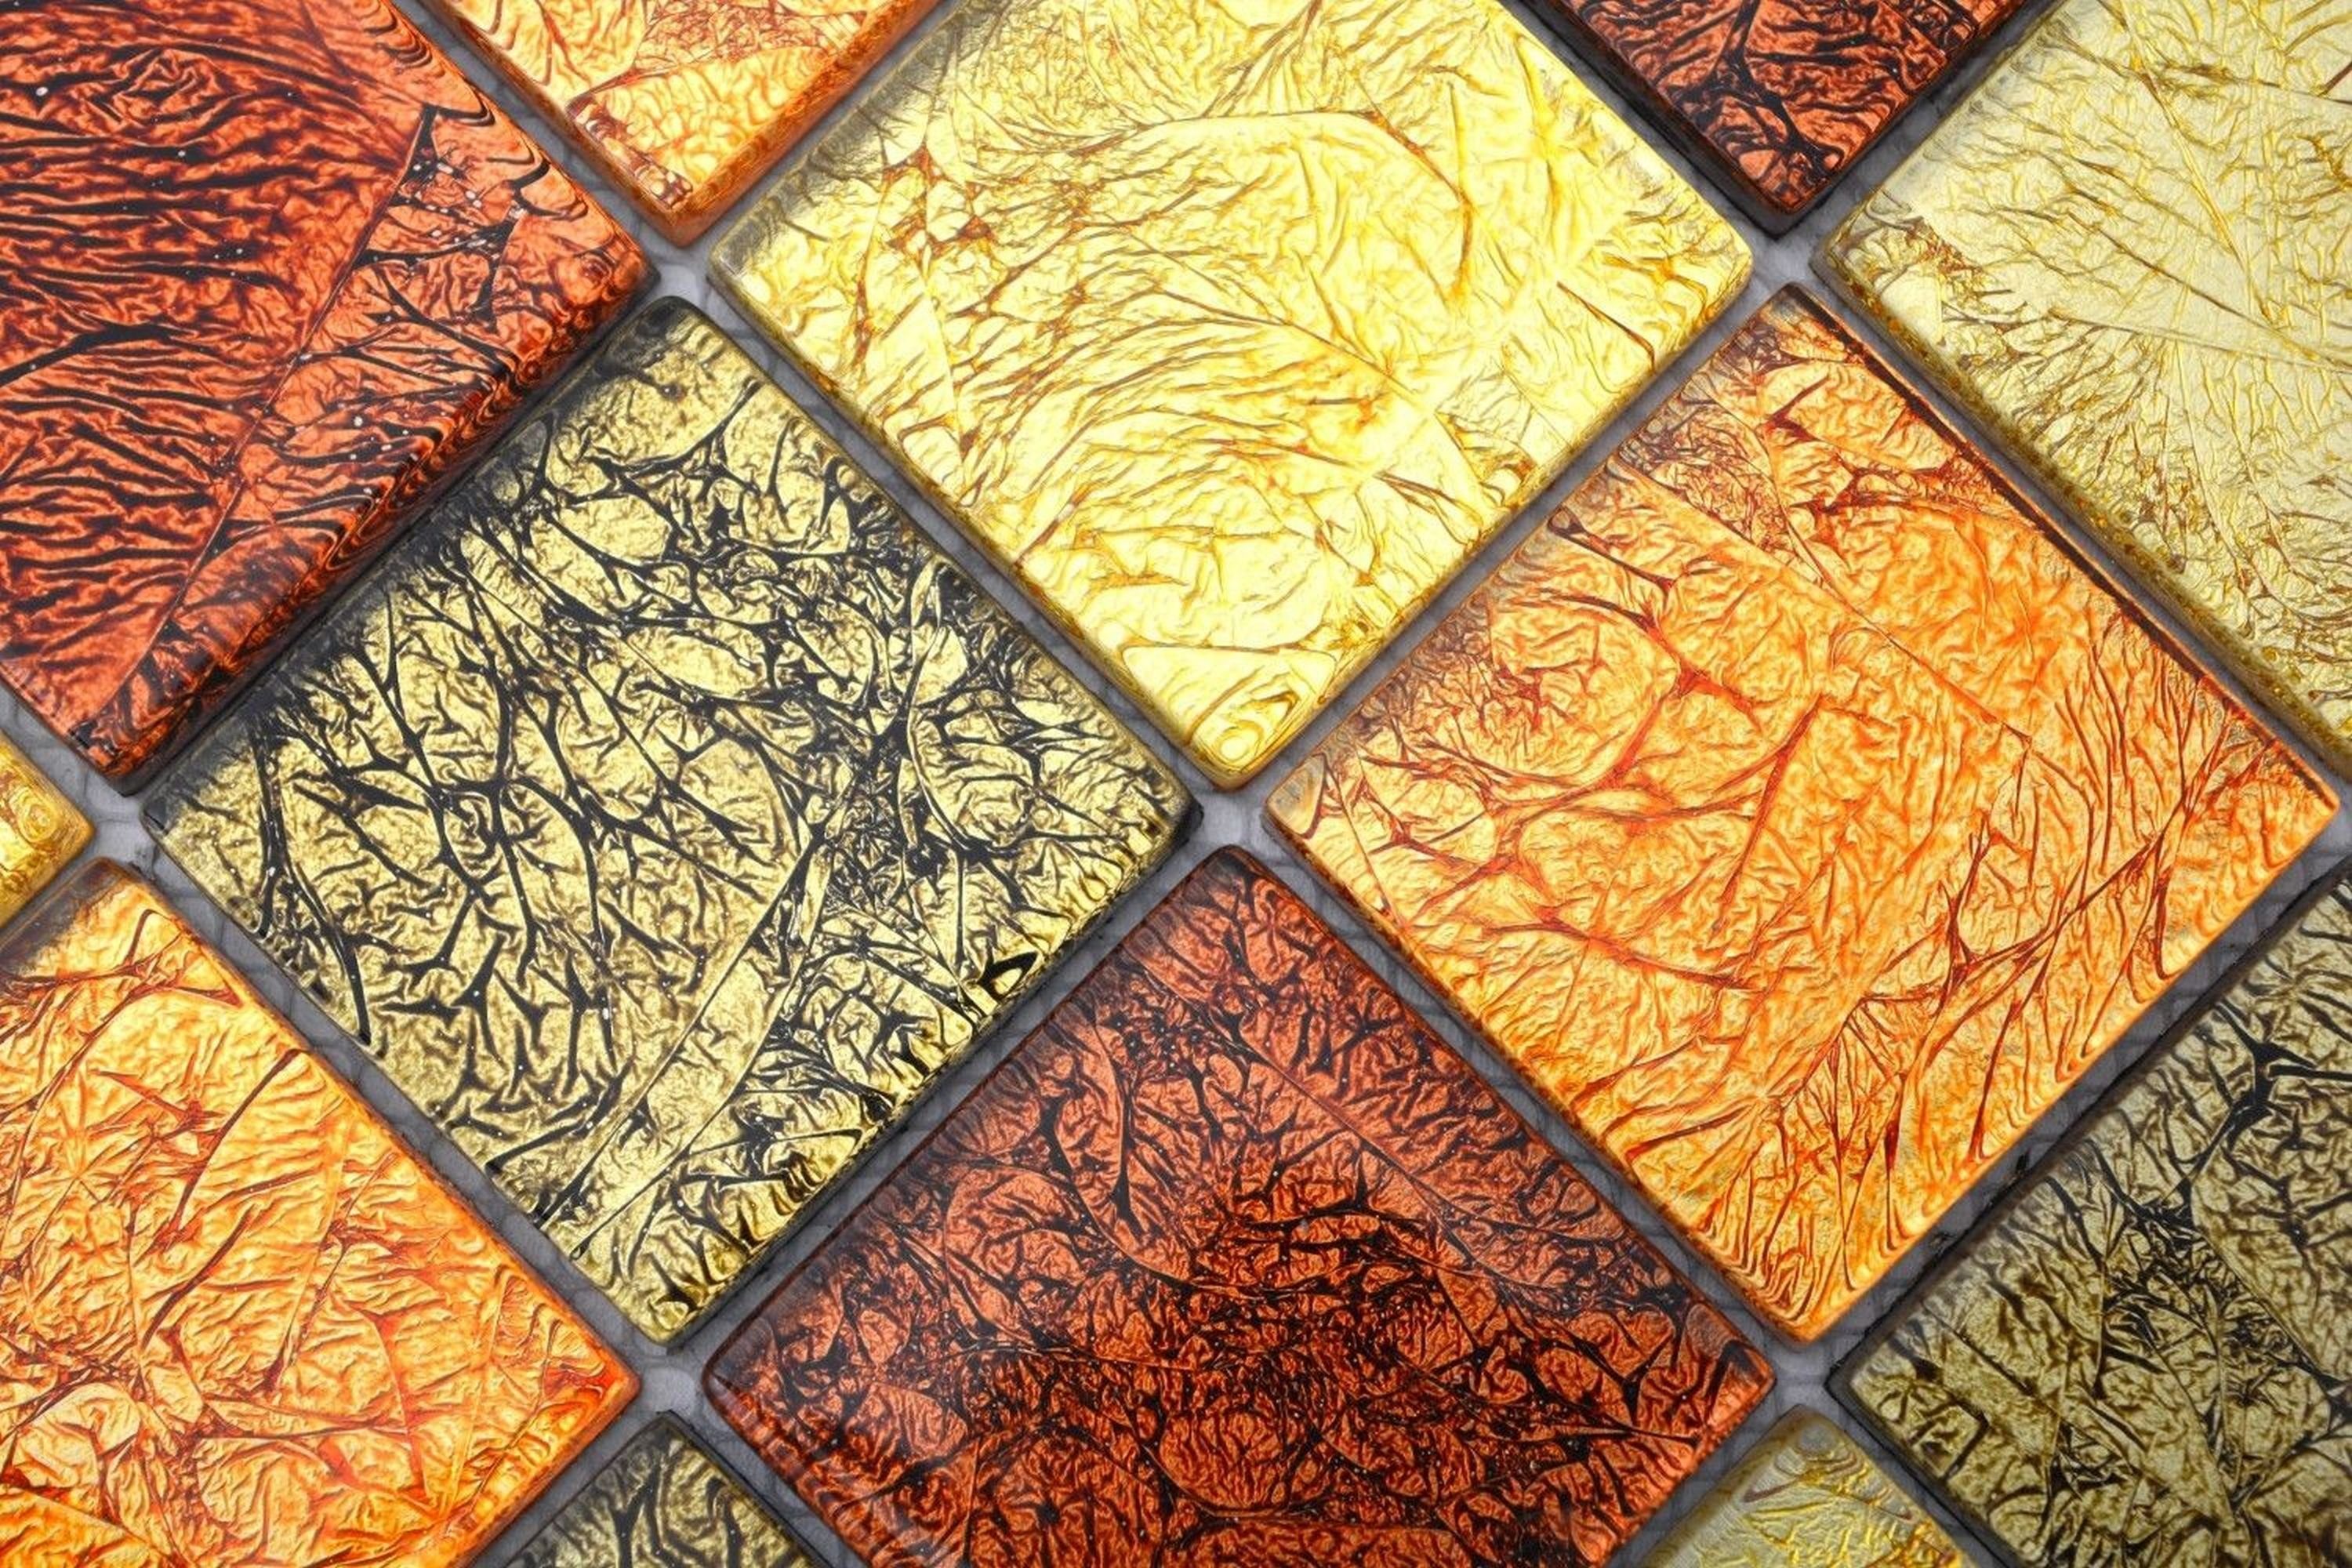 Mosani Mosaikfliese Mosaikfliesen orange Struktur Küche gold Glasmosaik Fliesenspiegel